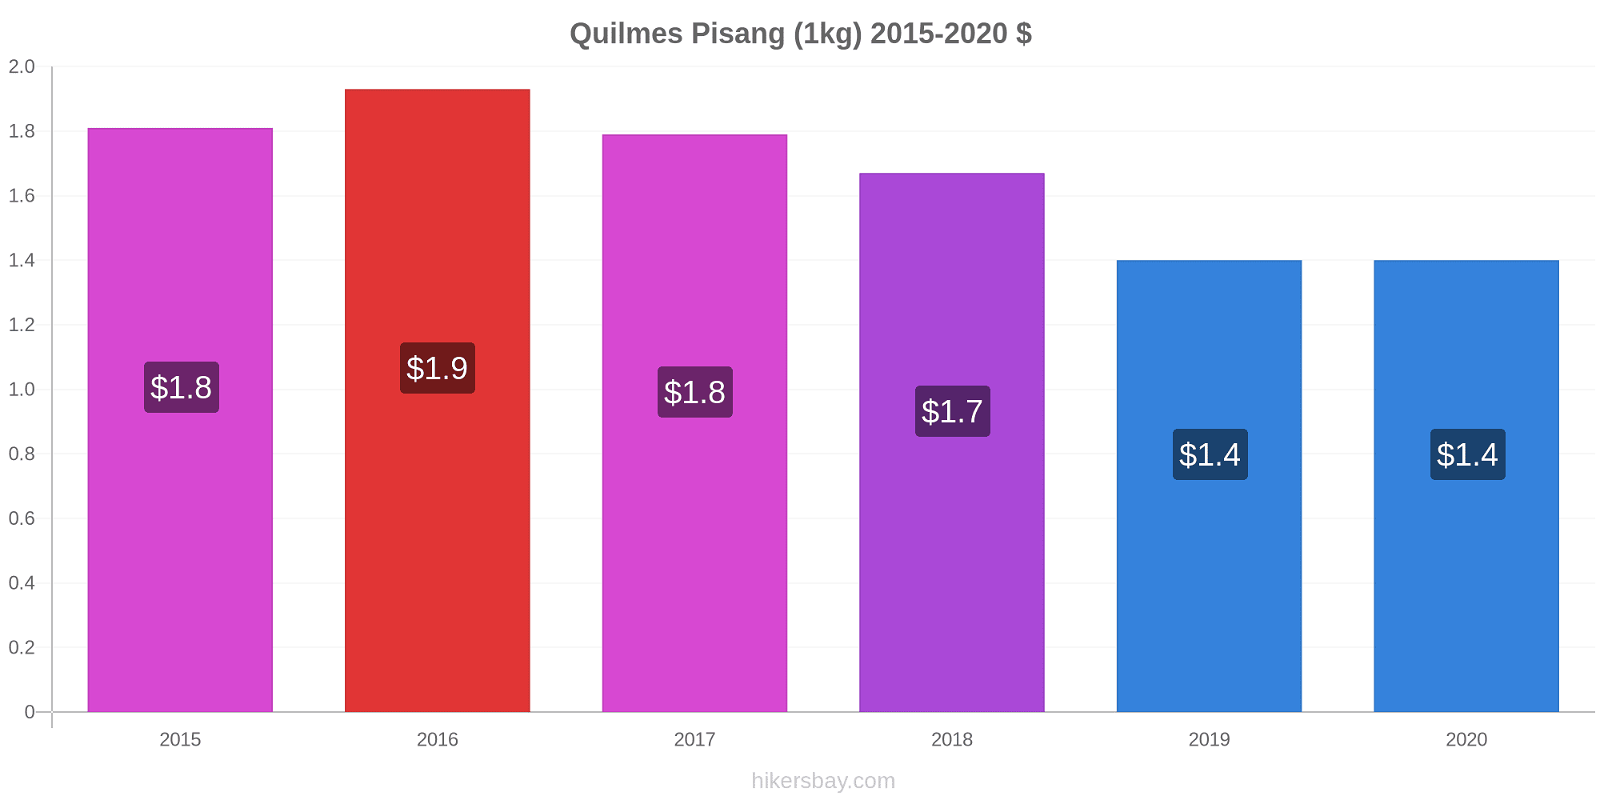 Quilmes perubahan harga Pisang (1kg) hikersbay.com